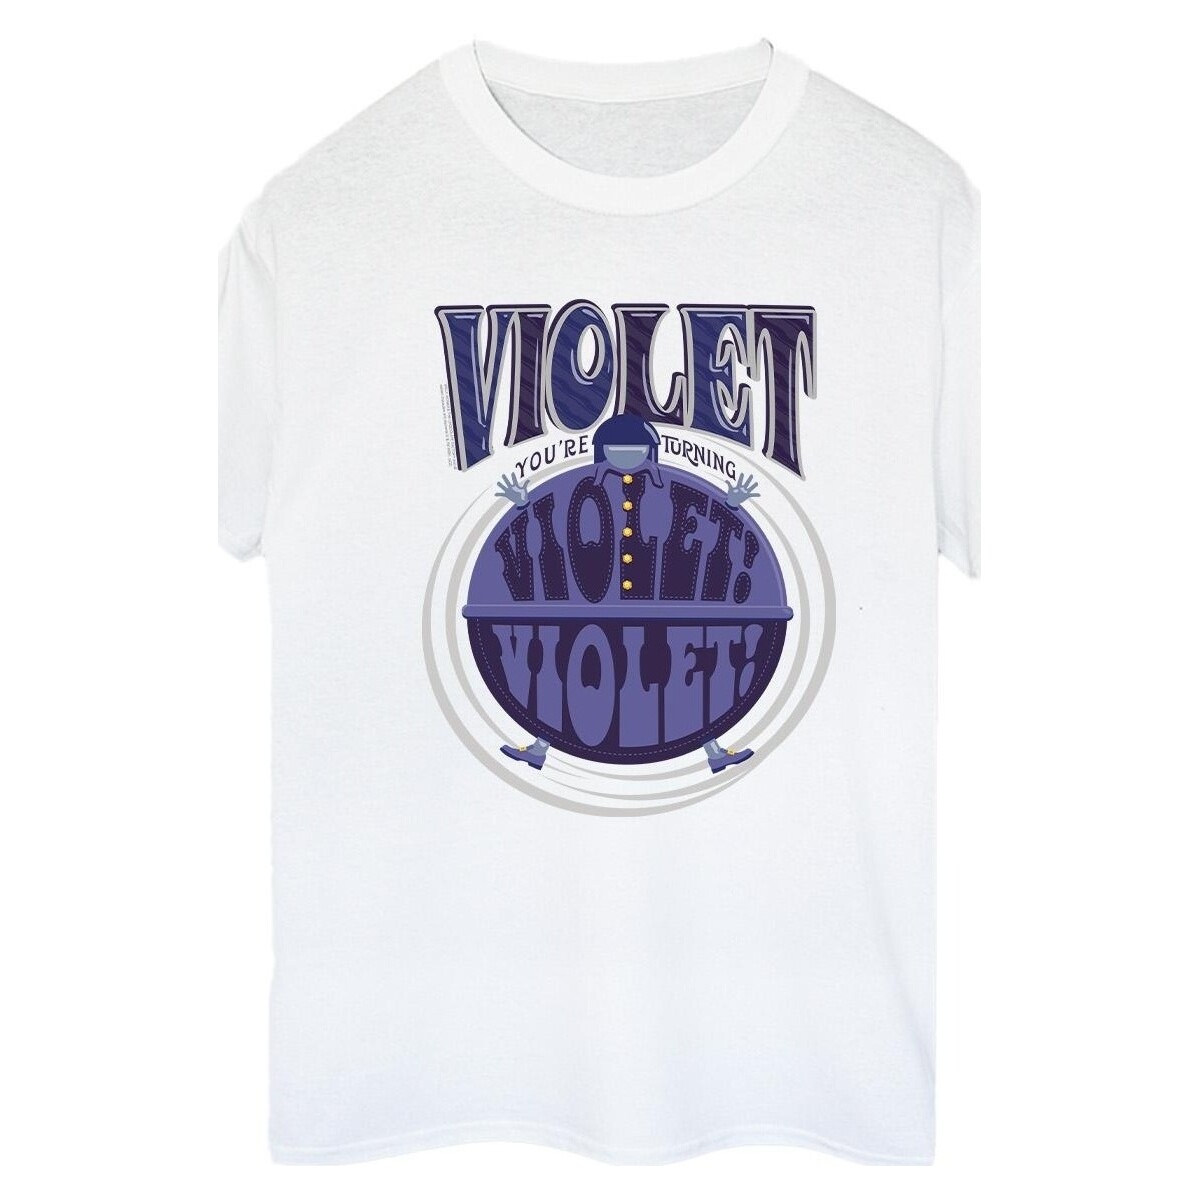 textil Mujer Camisetas manga larga Willy Wonka Violet Turning Violet Blanco